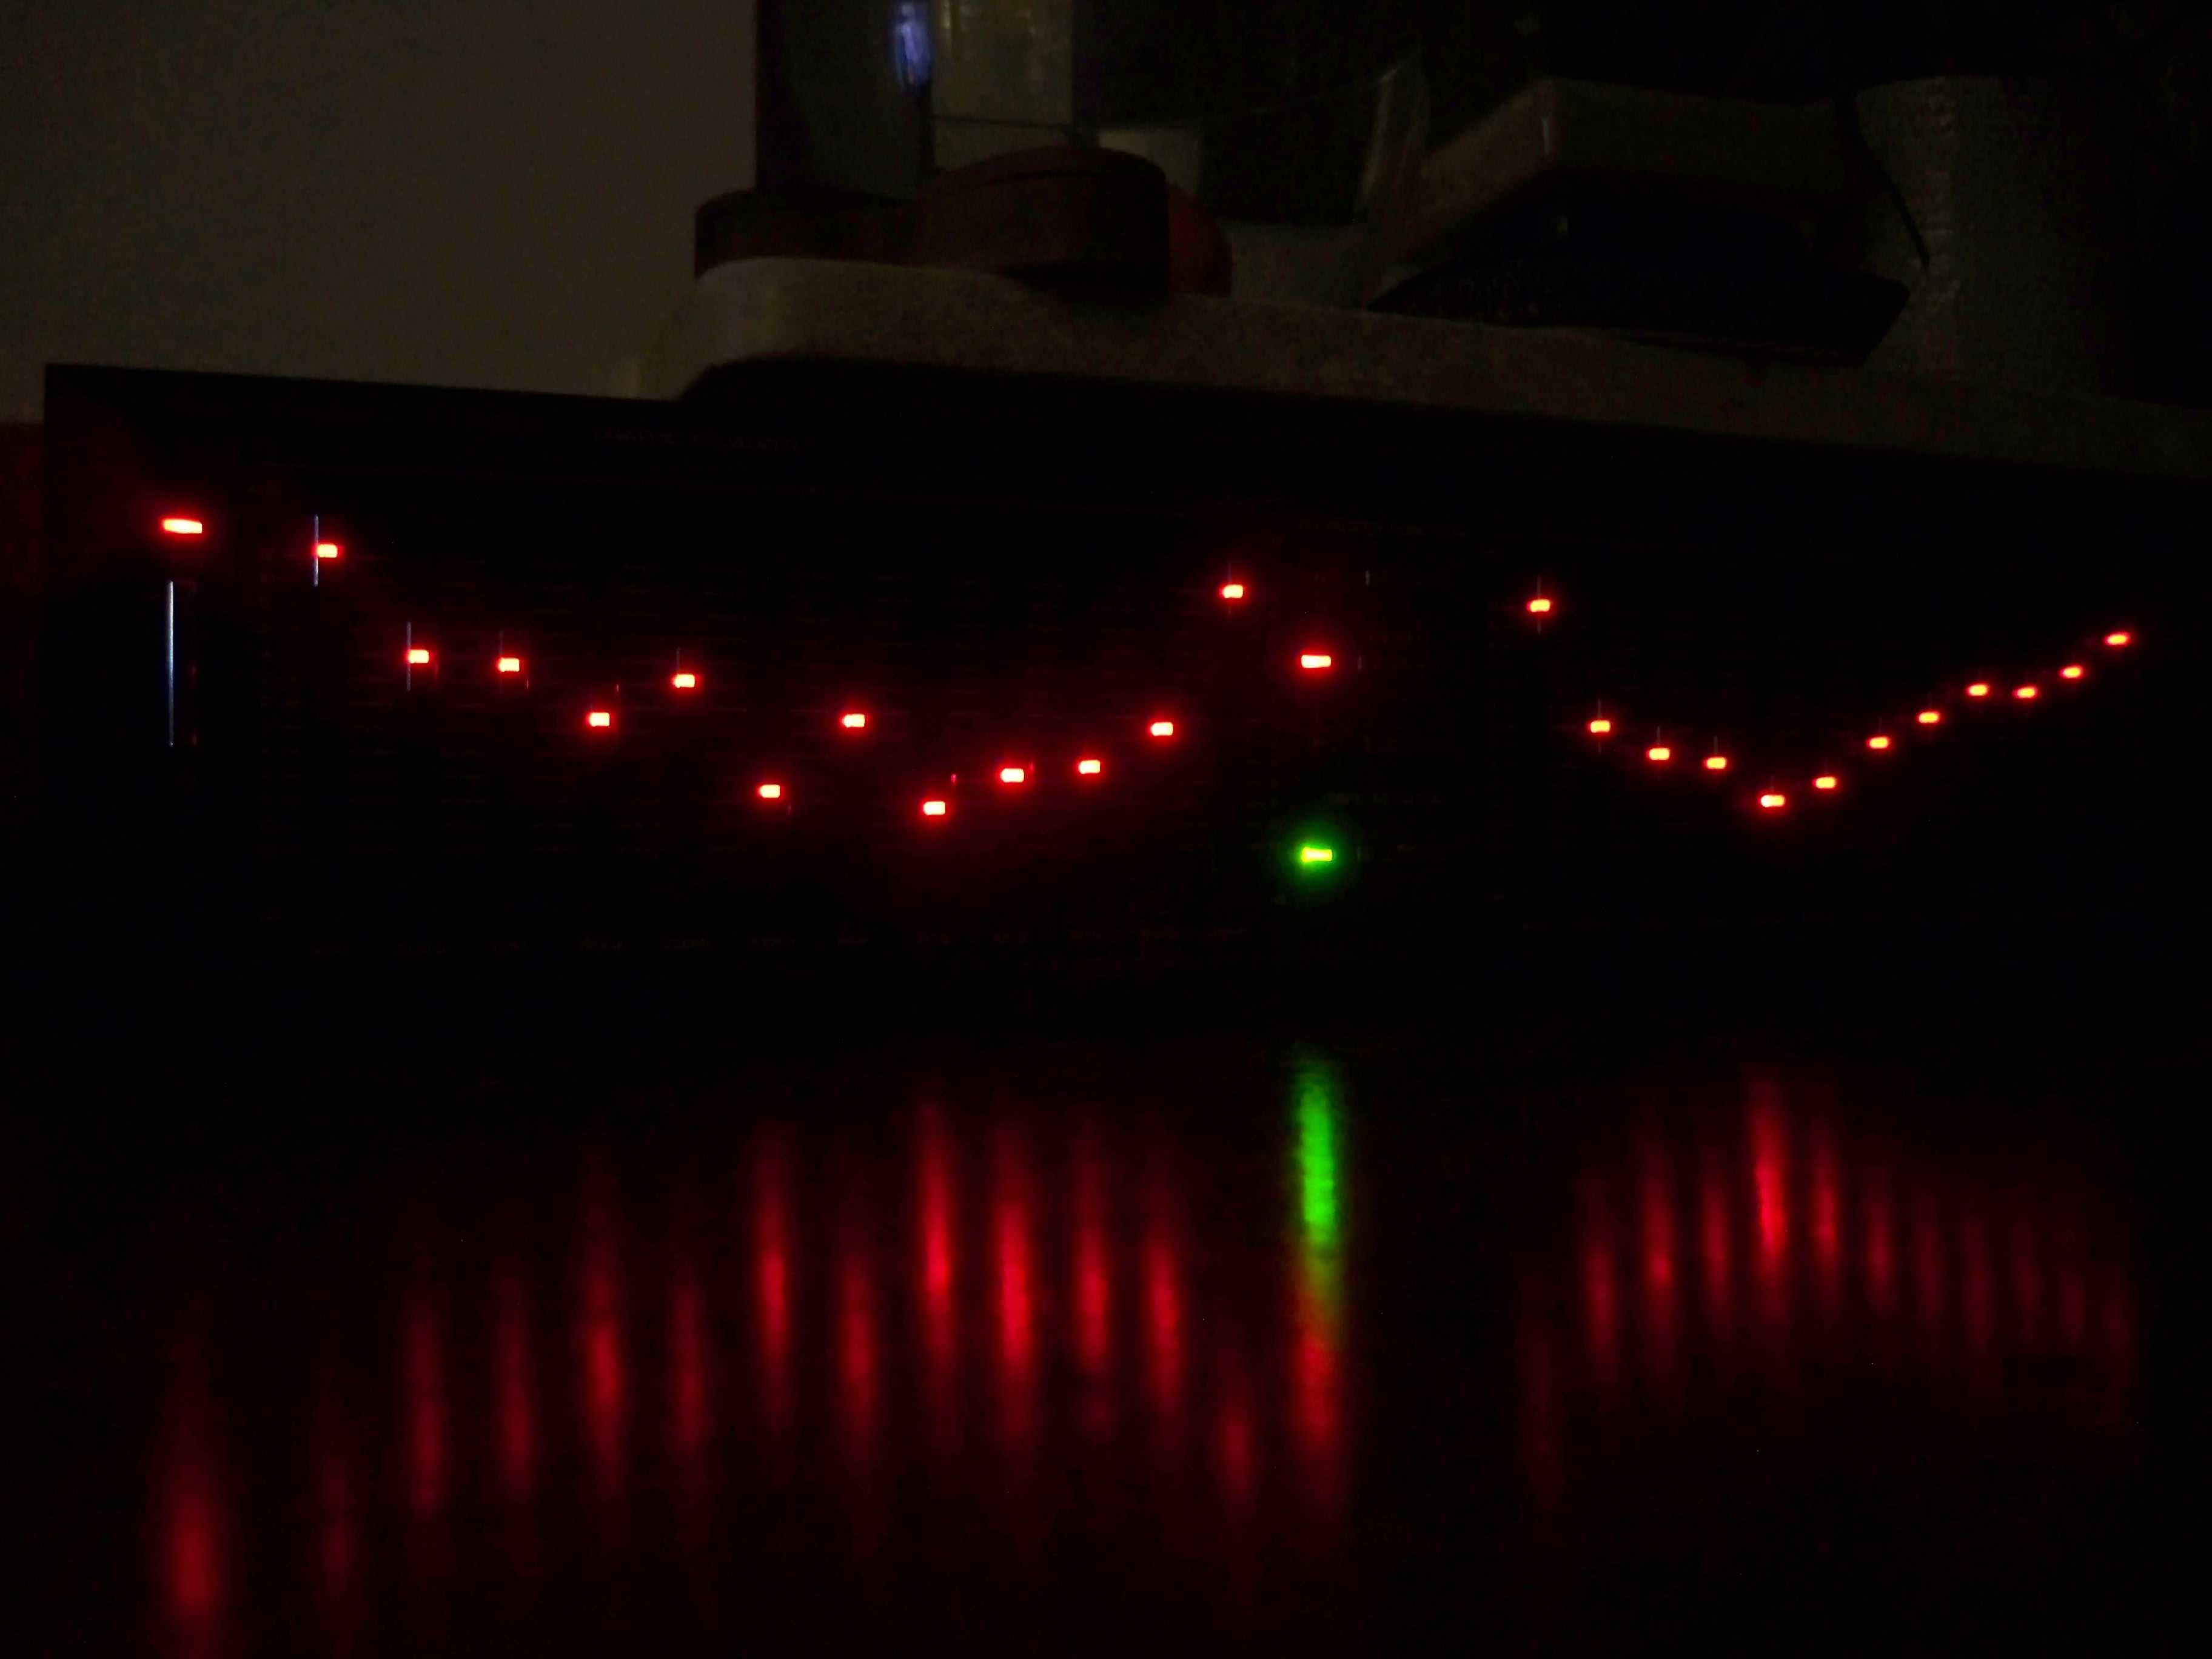 korektor equalizer Fisher EQ-275 2x12 suwaków czerwone LED